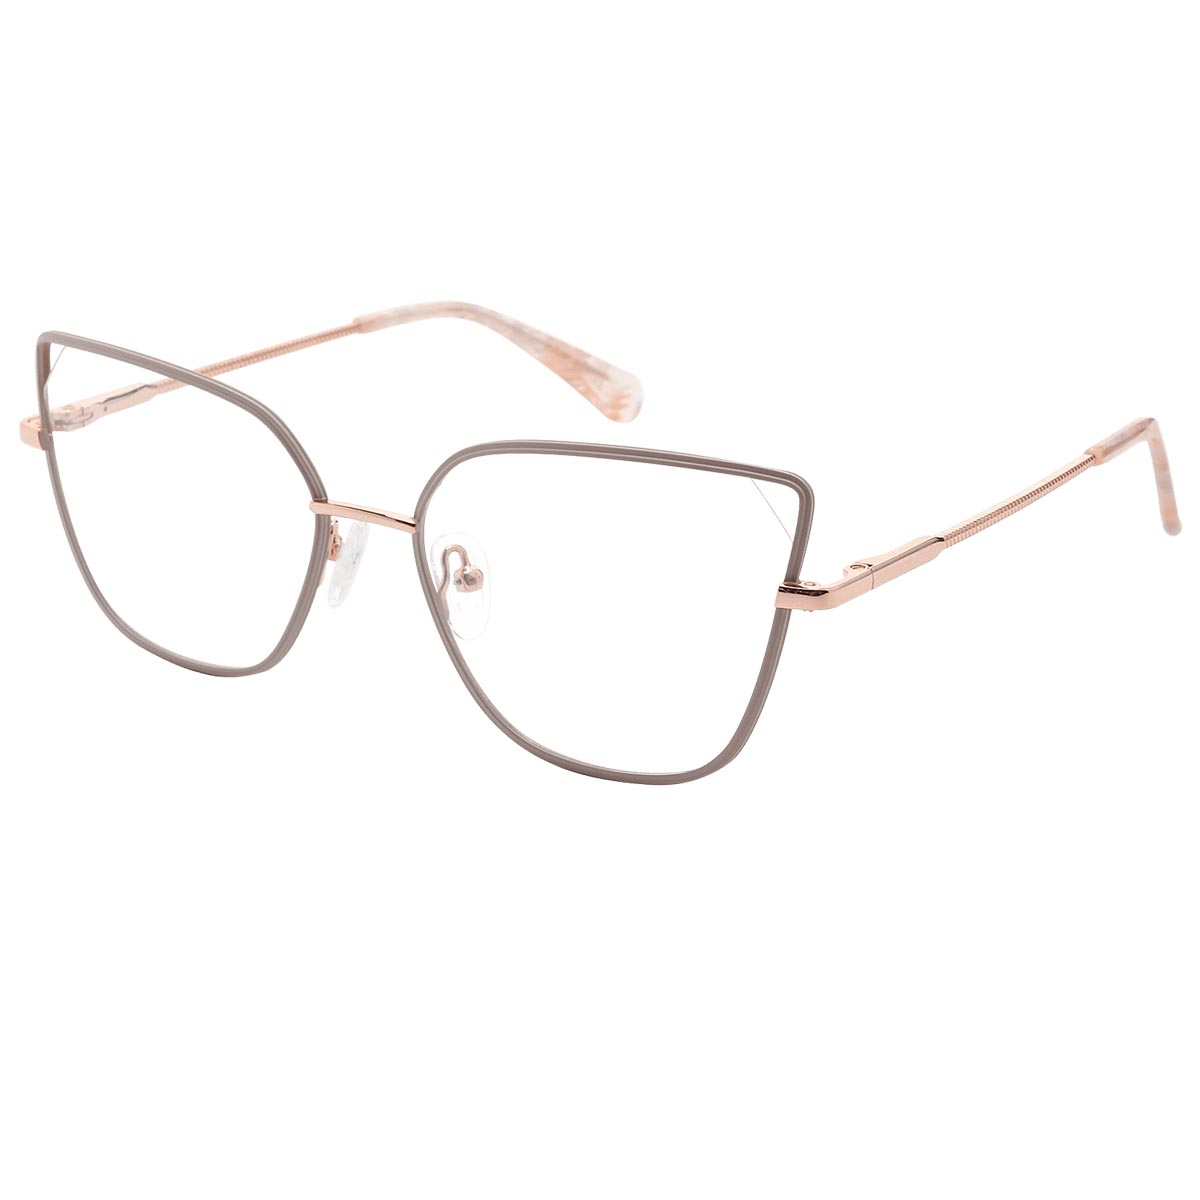 Hemera - Cat-eye Pink Reading Glasses for Women